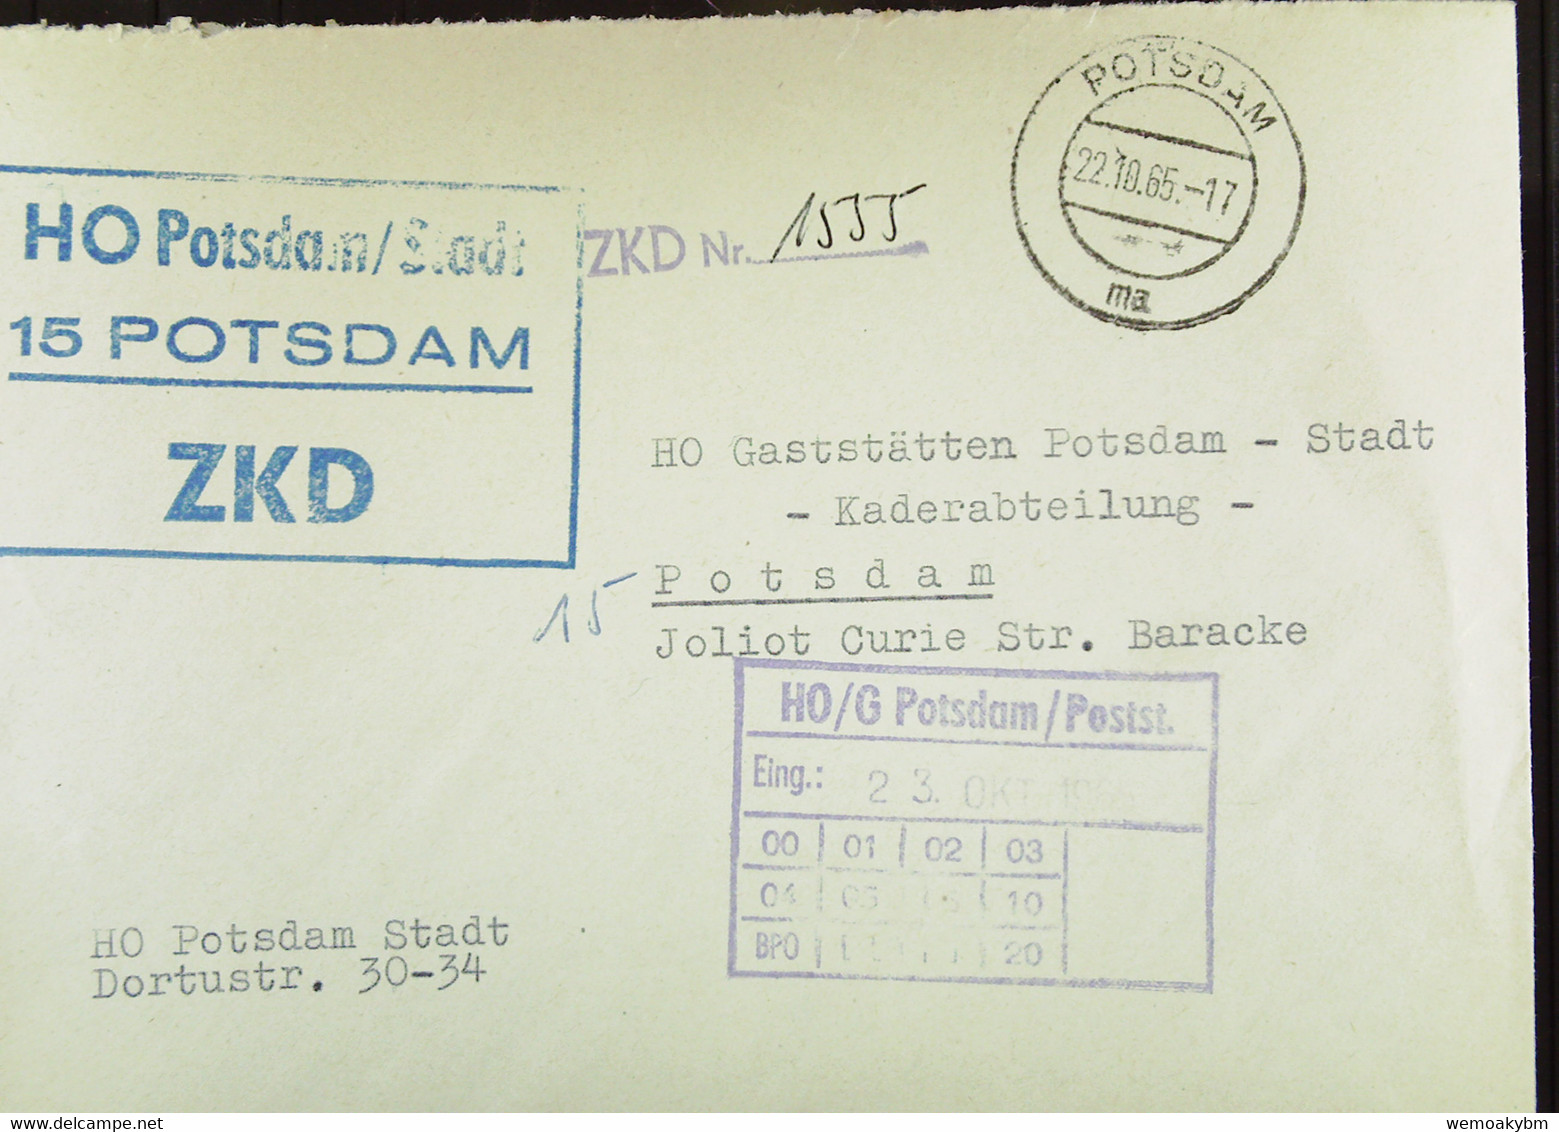 Orts-Brf Mit ZKD-Kastenst."HO Potsdam/Stadt 15 Potsdam" Vom 22.10.65 Mit ZKD Nr. 1555 Mit Eing-St HO Gaststätten Potsdam - Central Mail Service